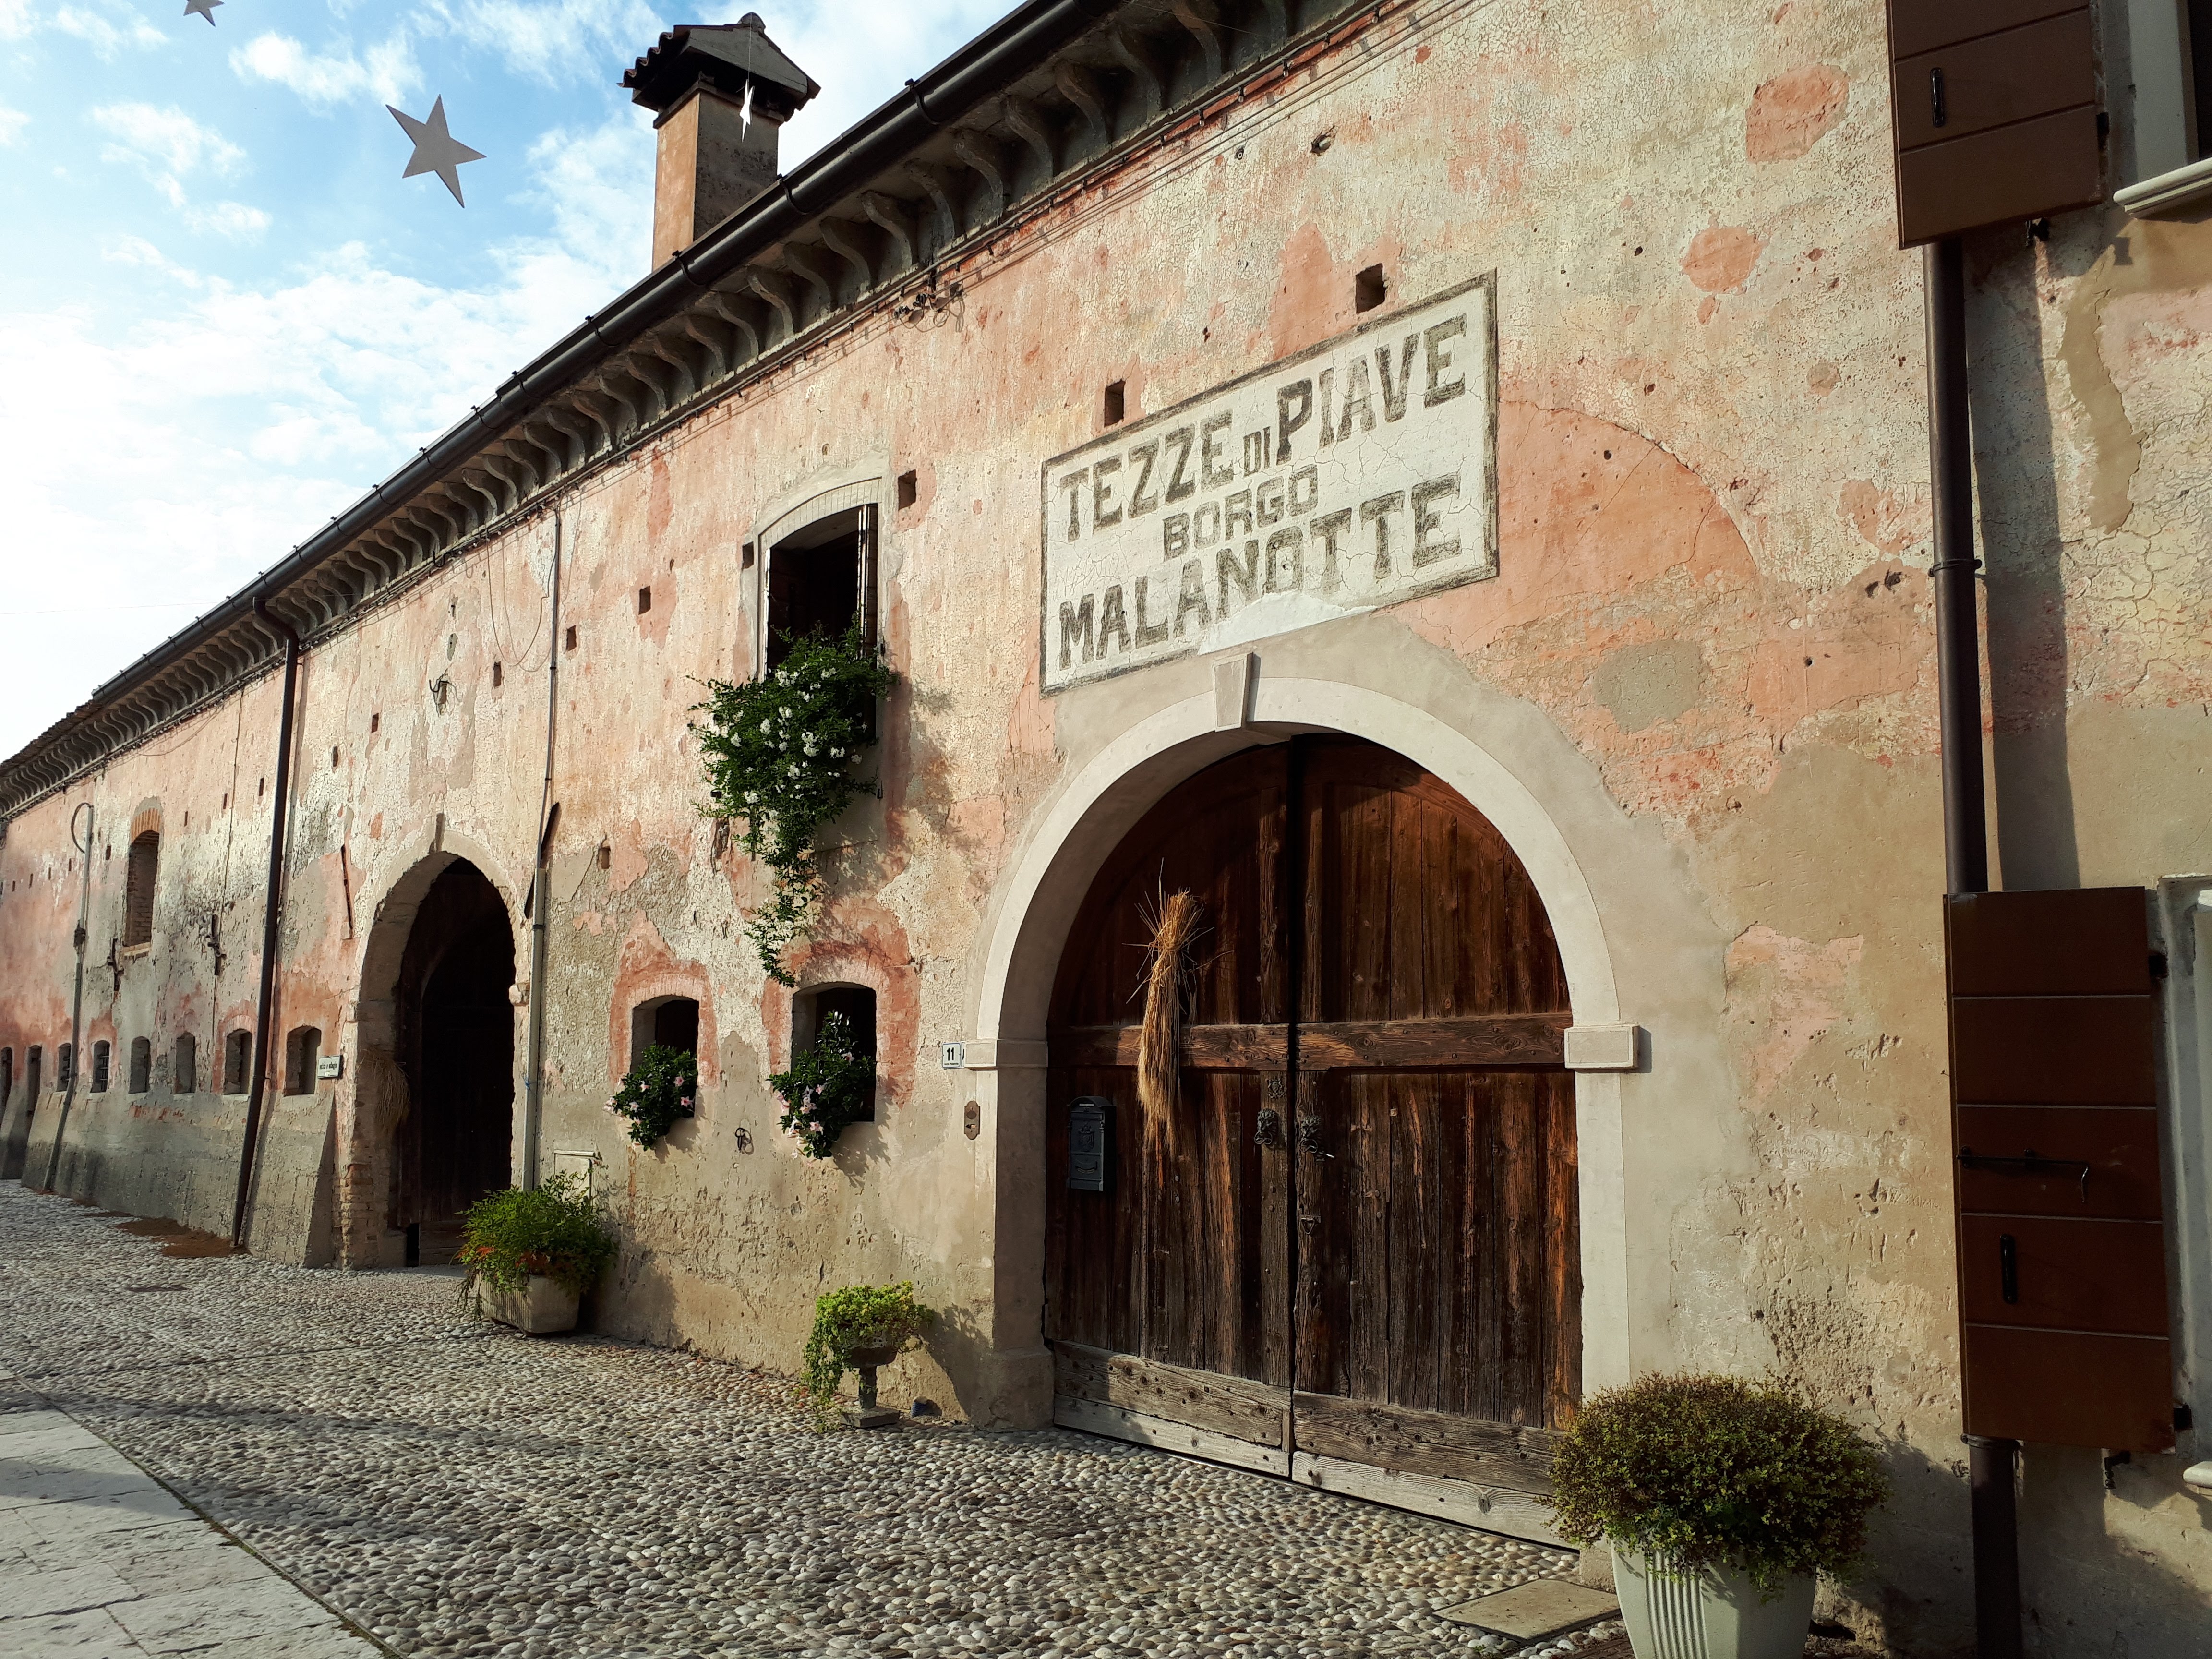 Borgo Malanotte del Piave